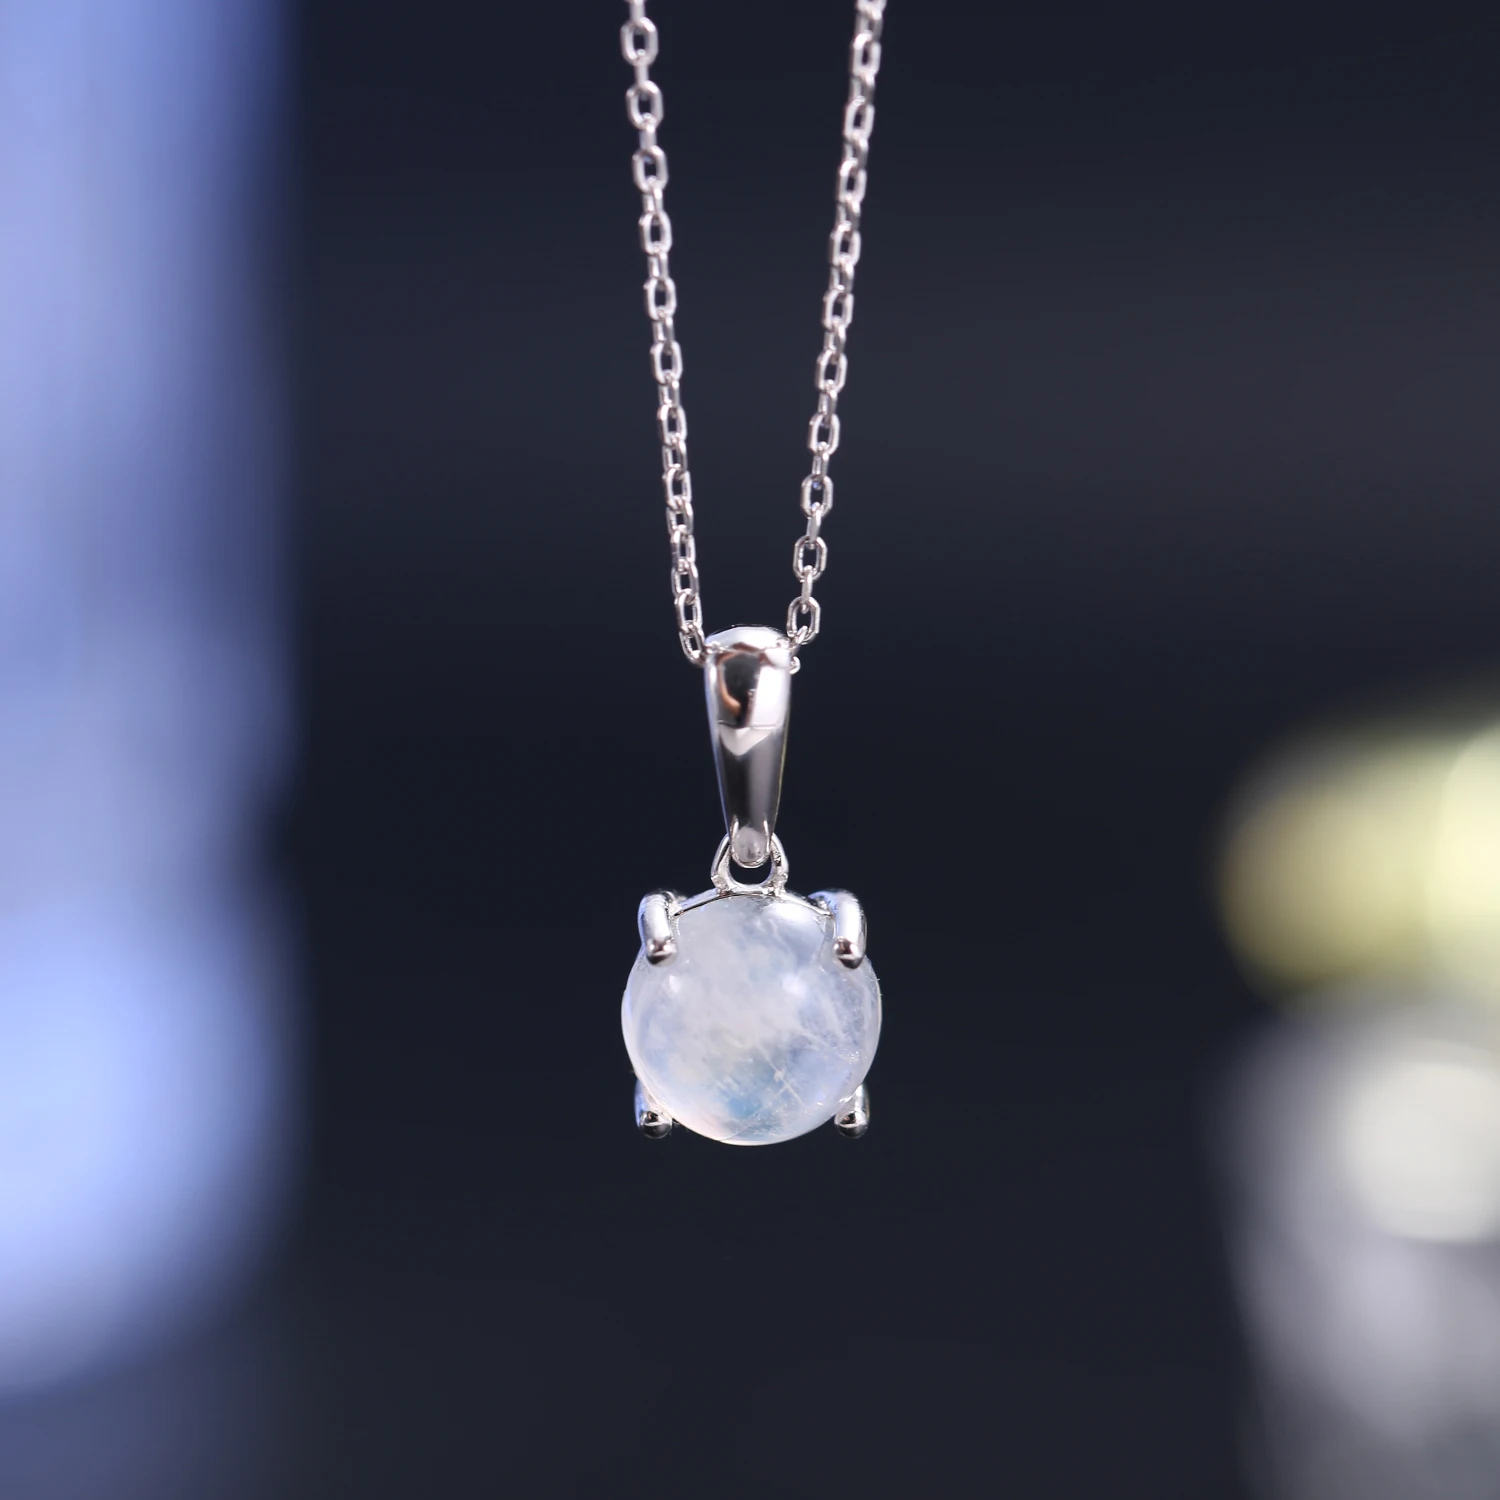 

Ювелирное Украшение GEM'S с драгоценным камнем, соответствующим месяцу рождения, цвет: серебро, Круглый, 9 мм, молочный синий лунный камень, кулон-солитер, ожерелье, подарок для нее